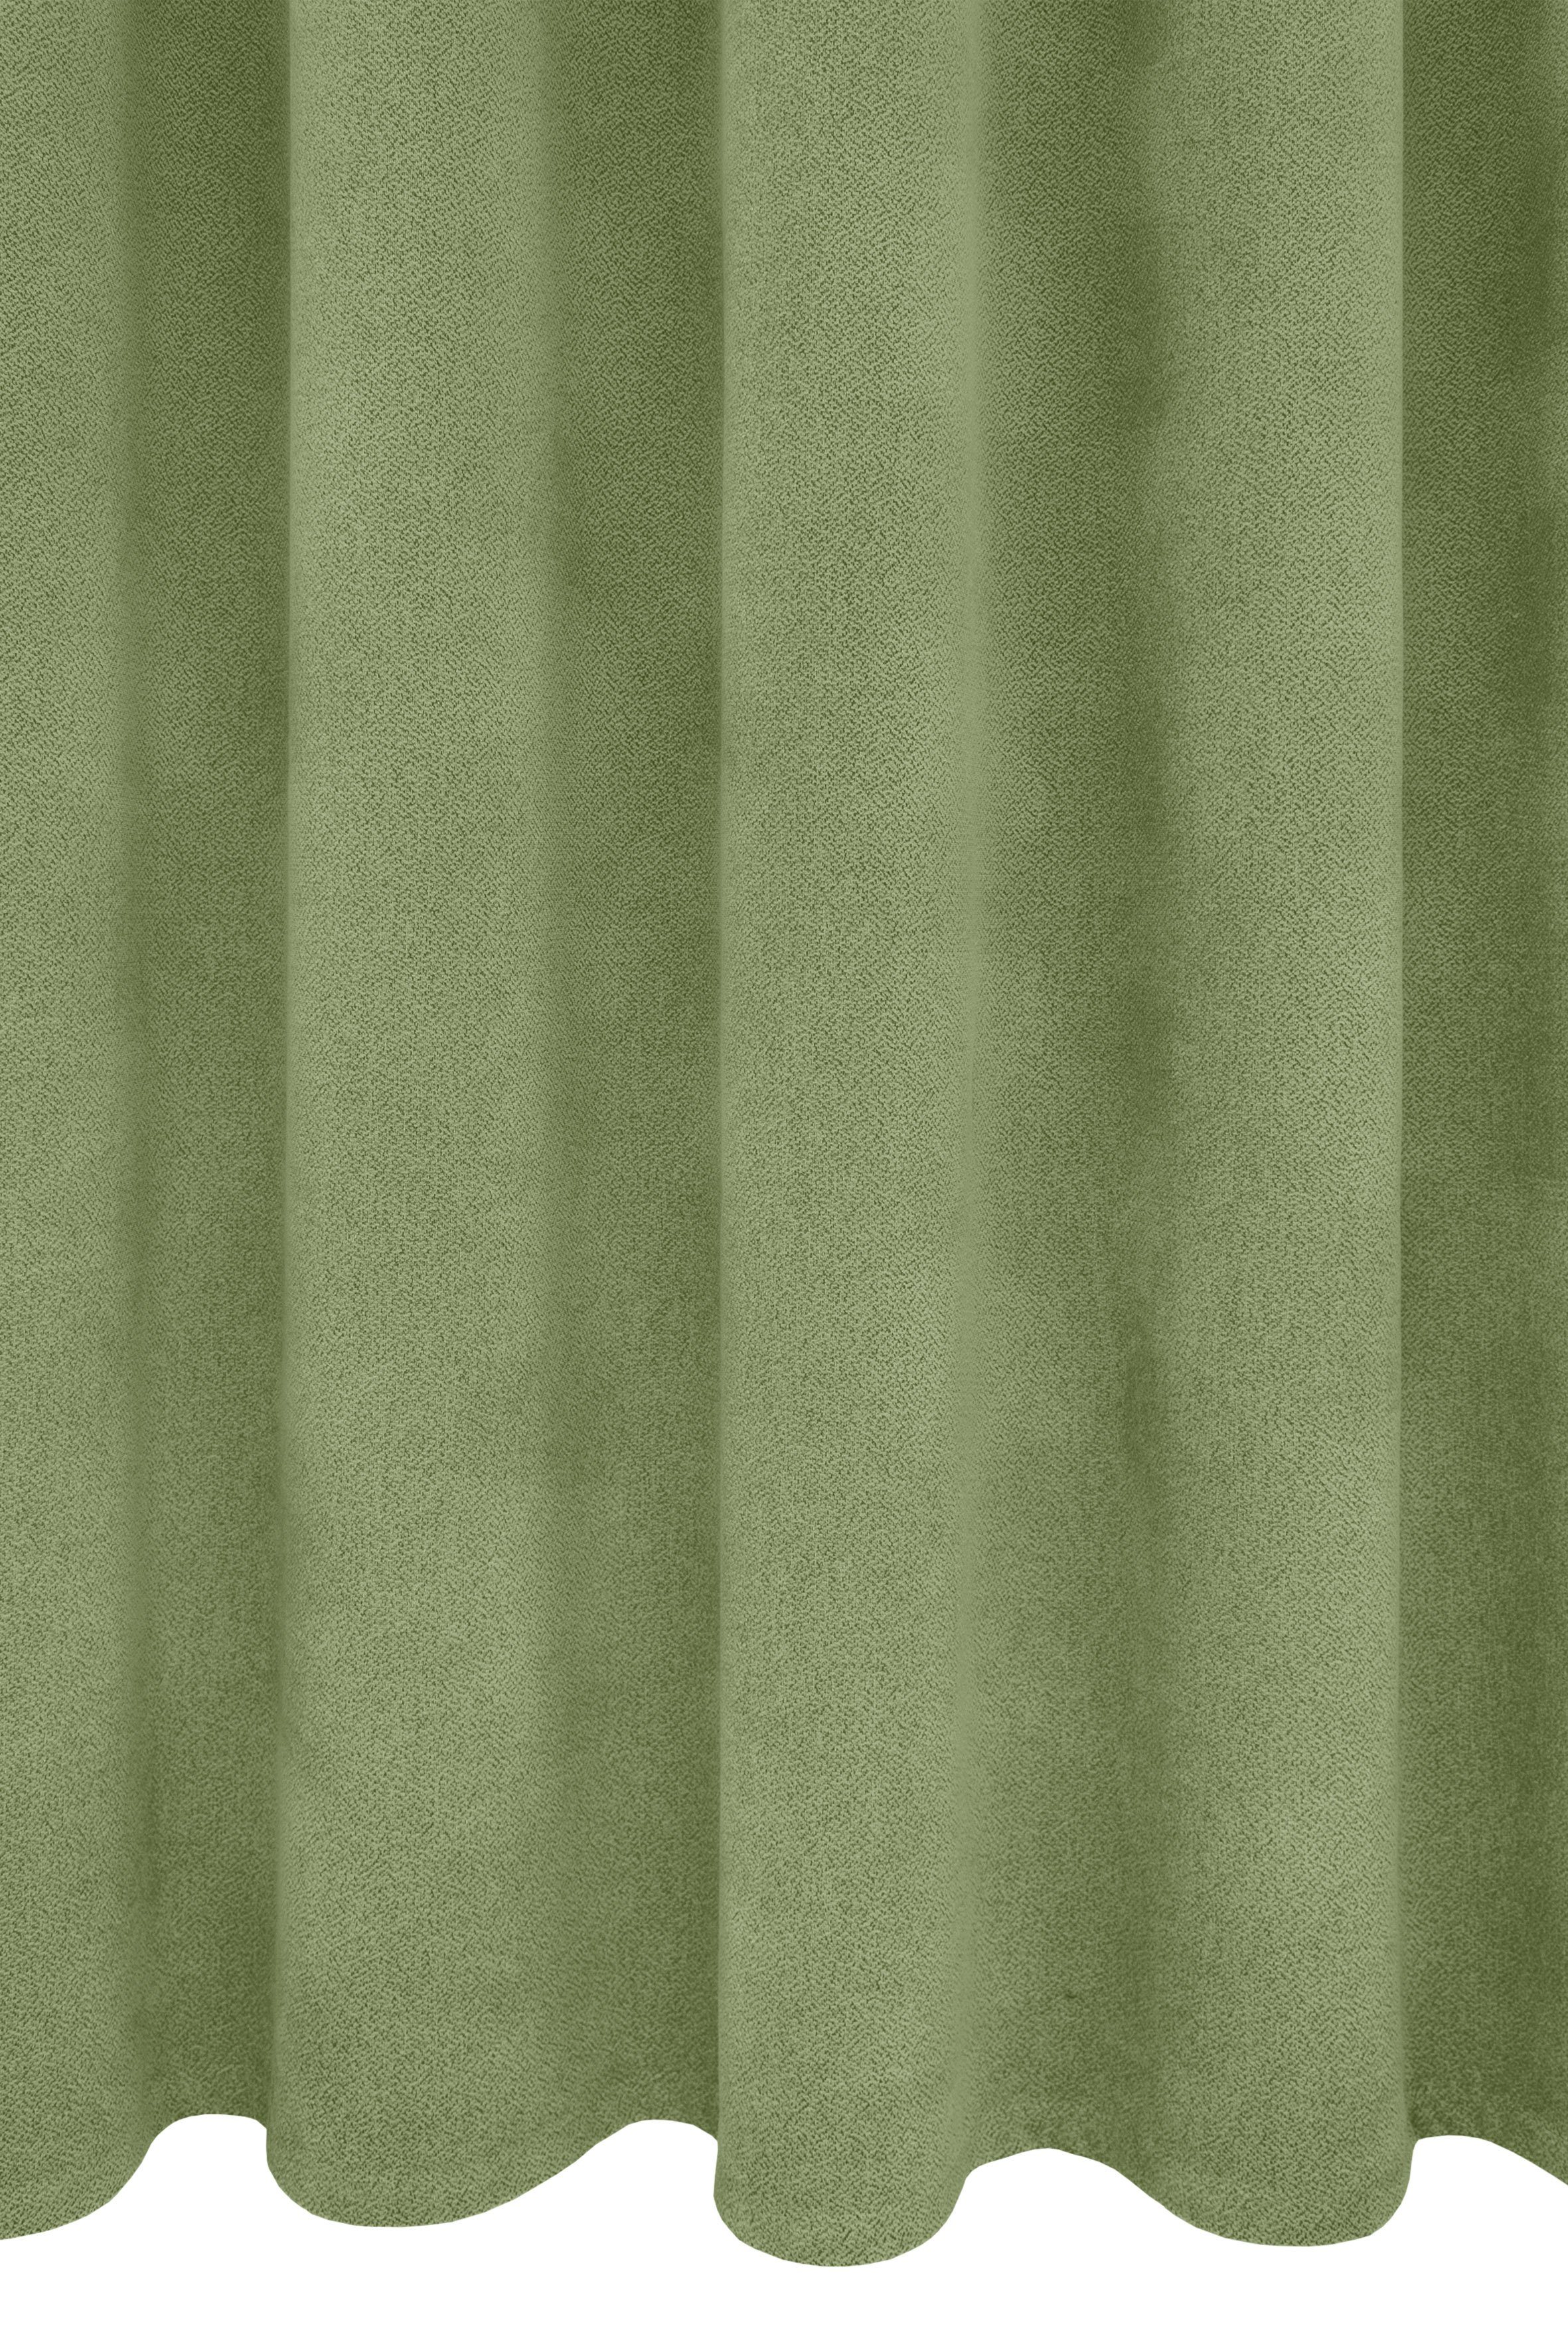 Vorhang Alea, VHG, 415 (1 Kälteschutz, g/²m verdunkelnd, Breite grün einfarbig, Polyester, Wärmeschutz, 145cm, sparend, Energie St), Ösen